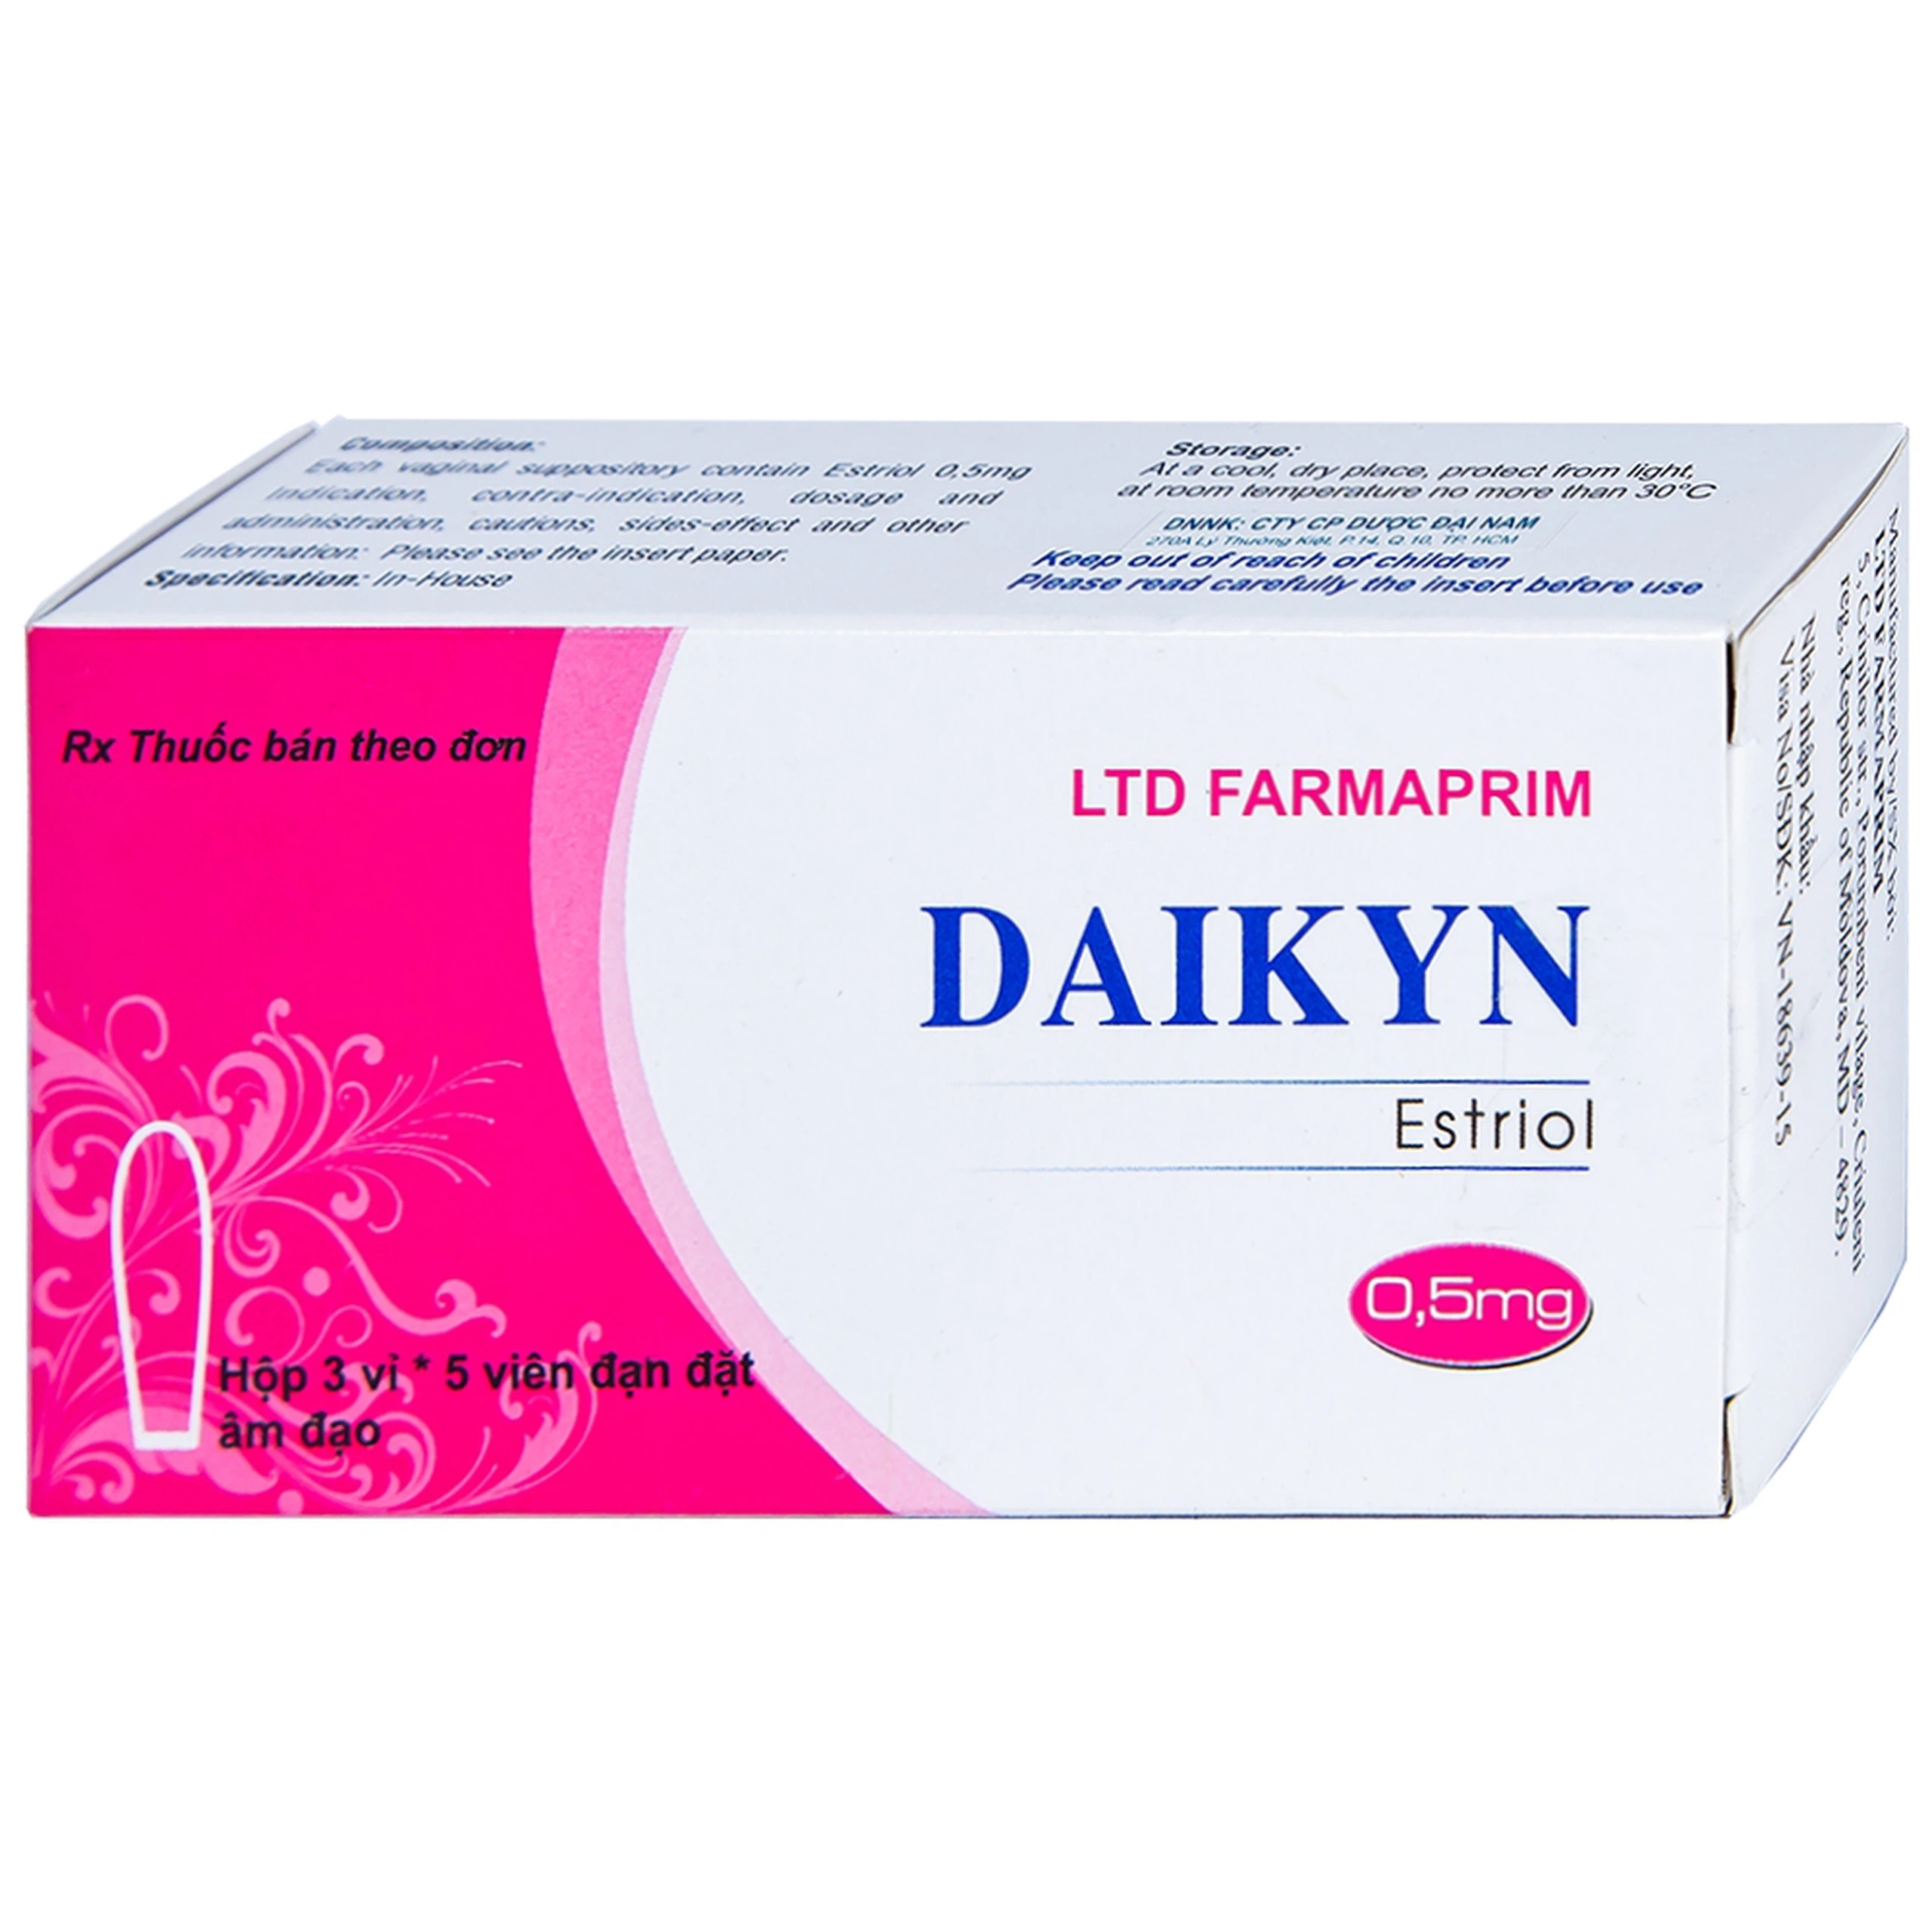 Viên đặt Daikyn điều trị các triệu chứng tiết niệu, sinh dục do thiếu estrogen (3 vỉ x 5 viên)